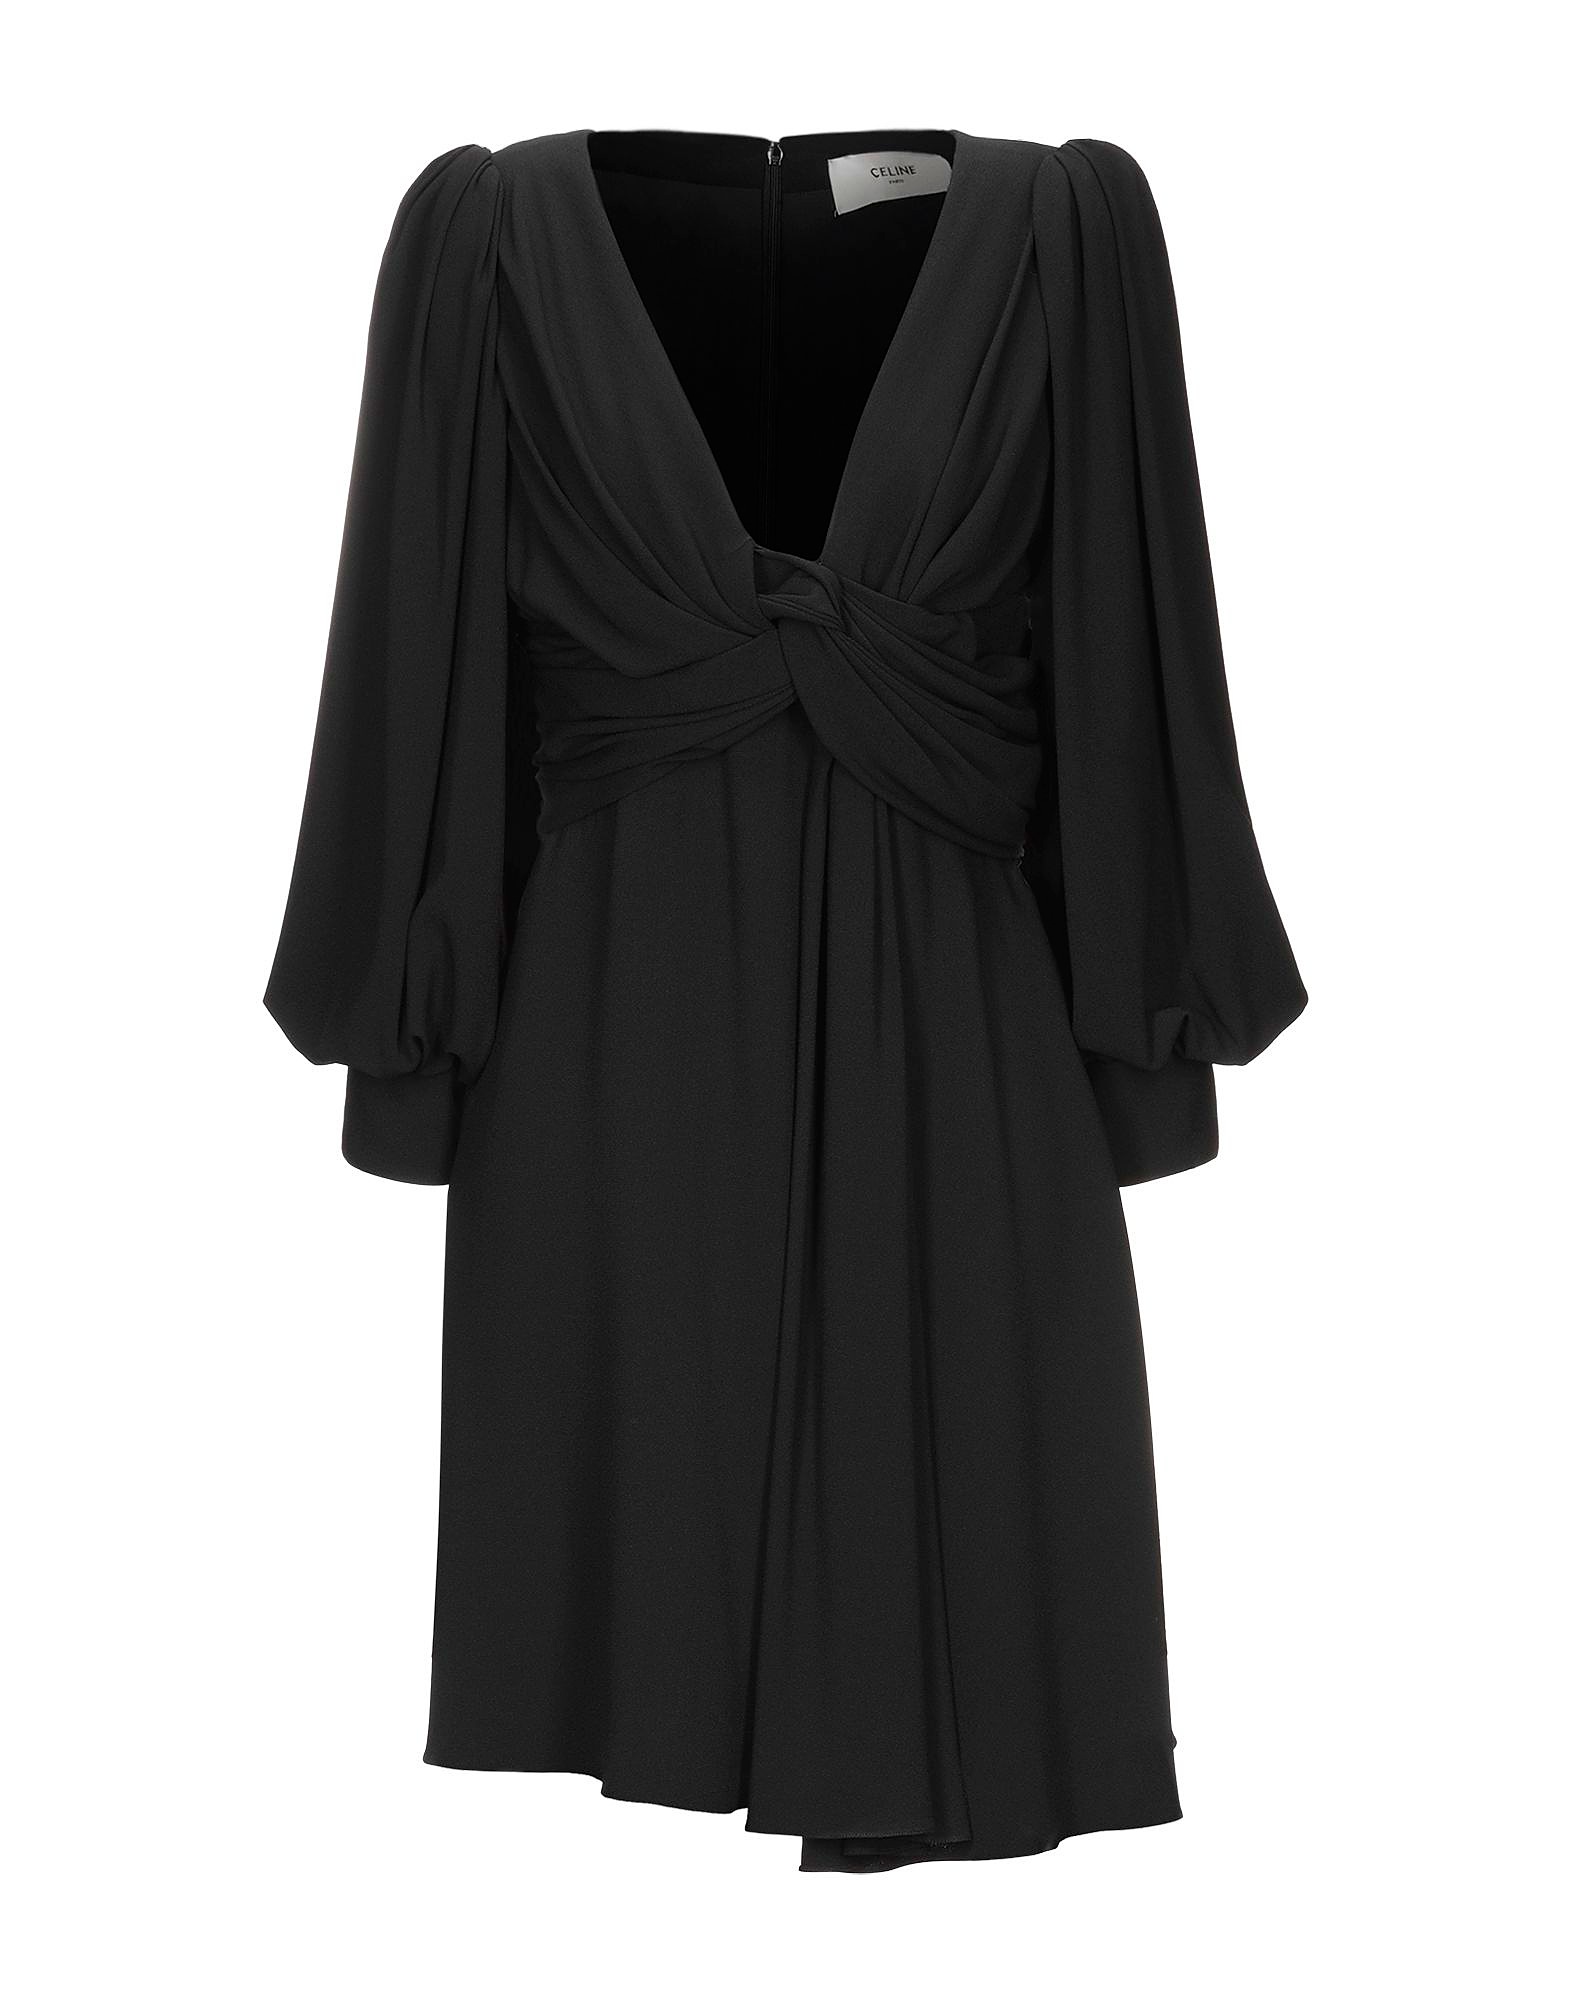 Платье короткое Celine, черный летний женский повседневный костюм двойка с оборками и v образным вырезом